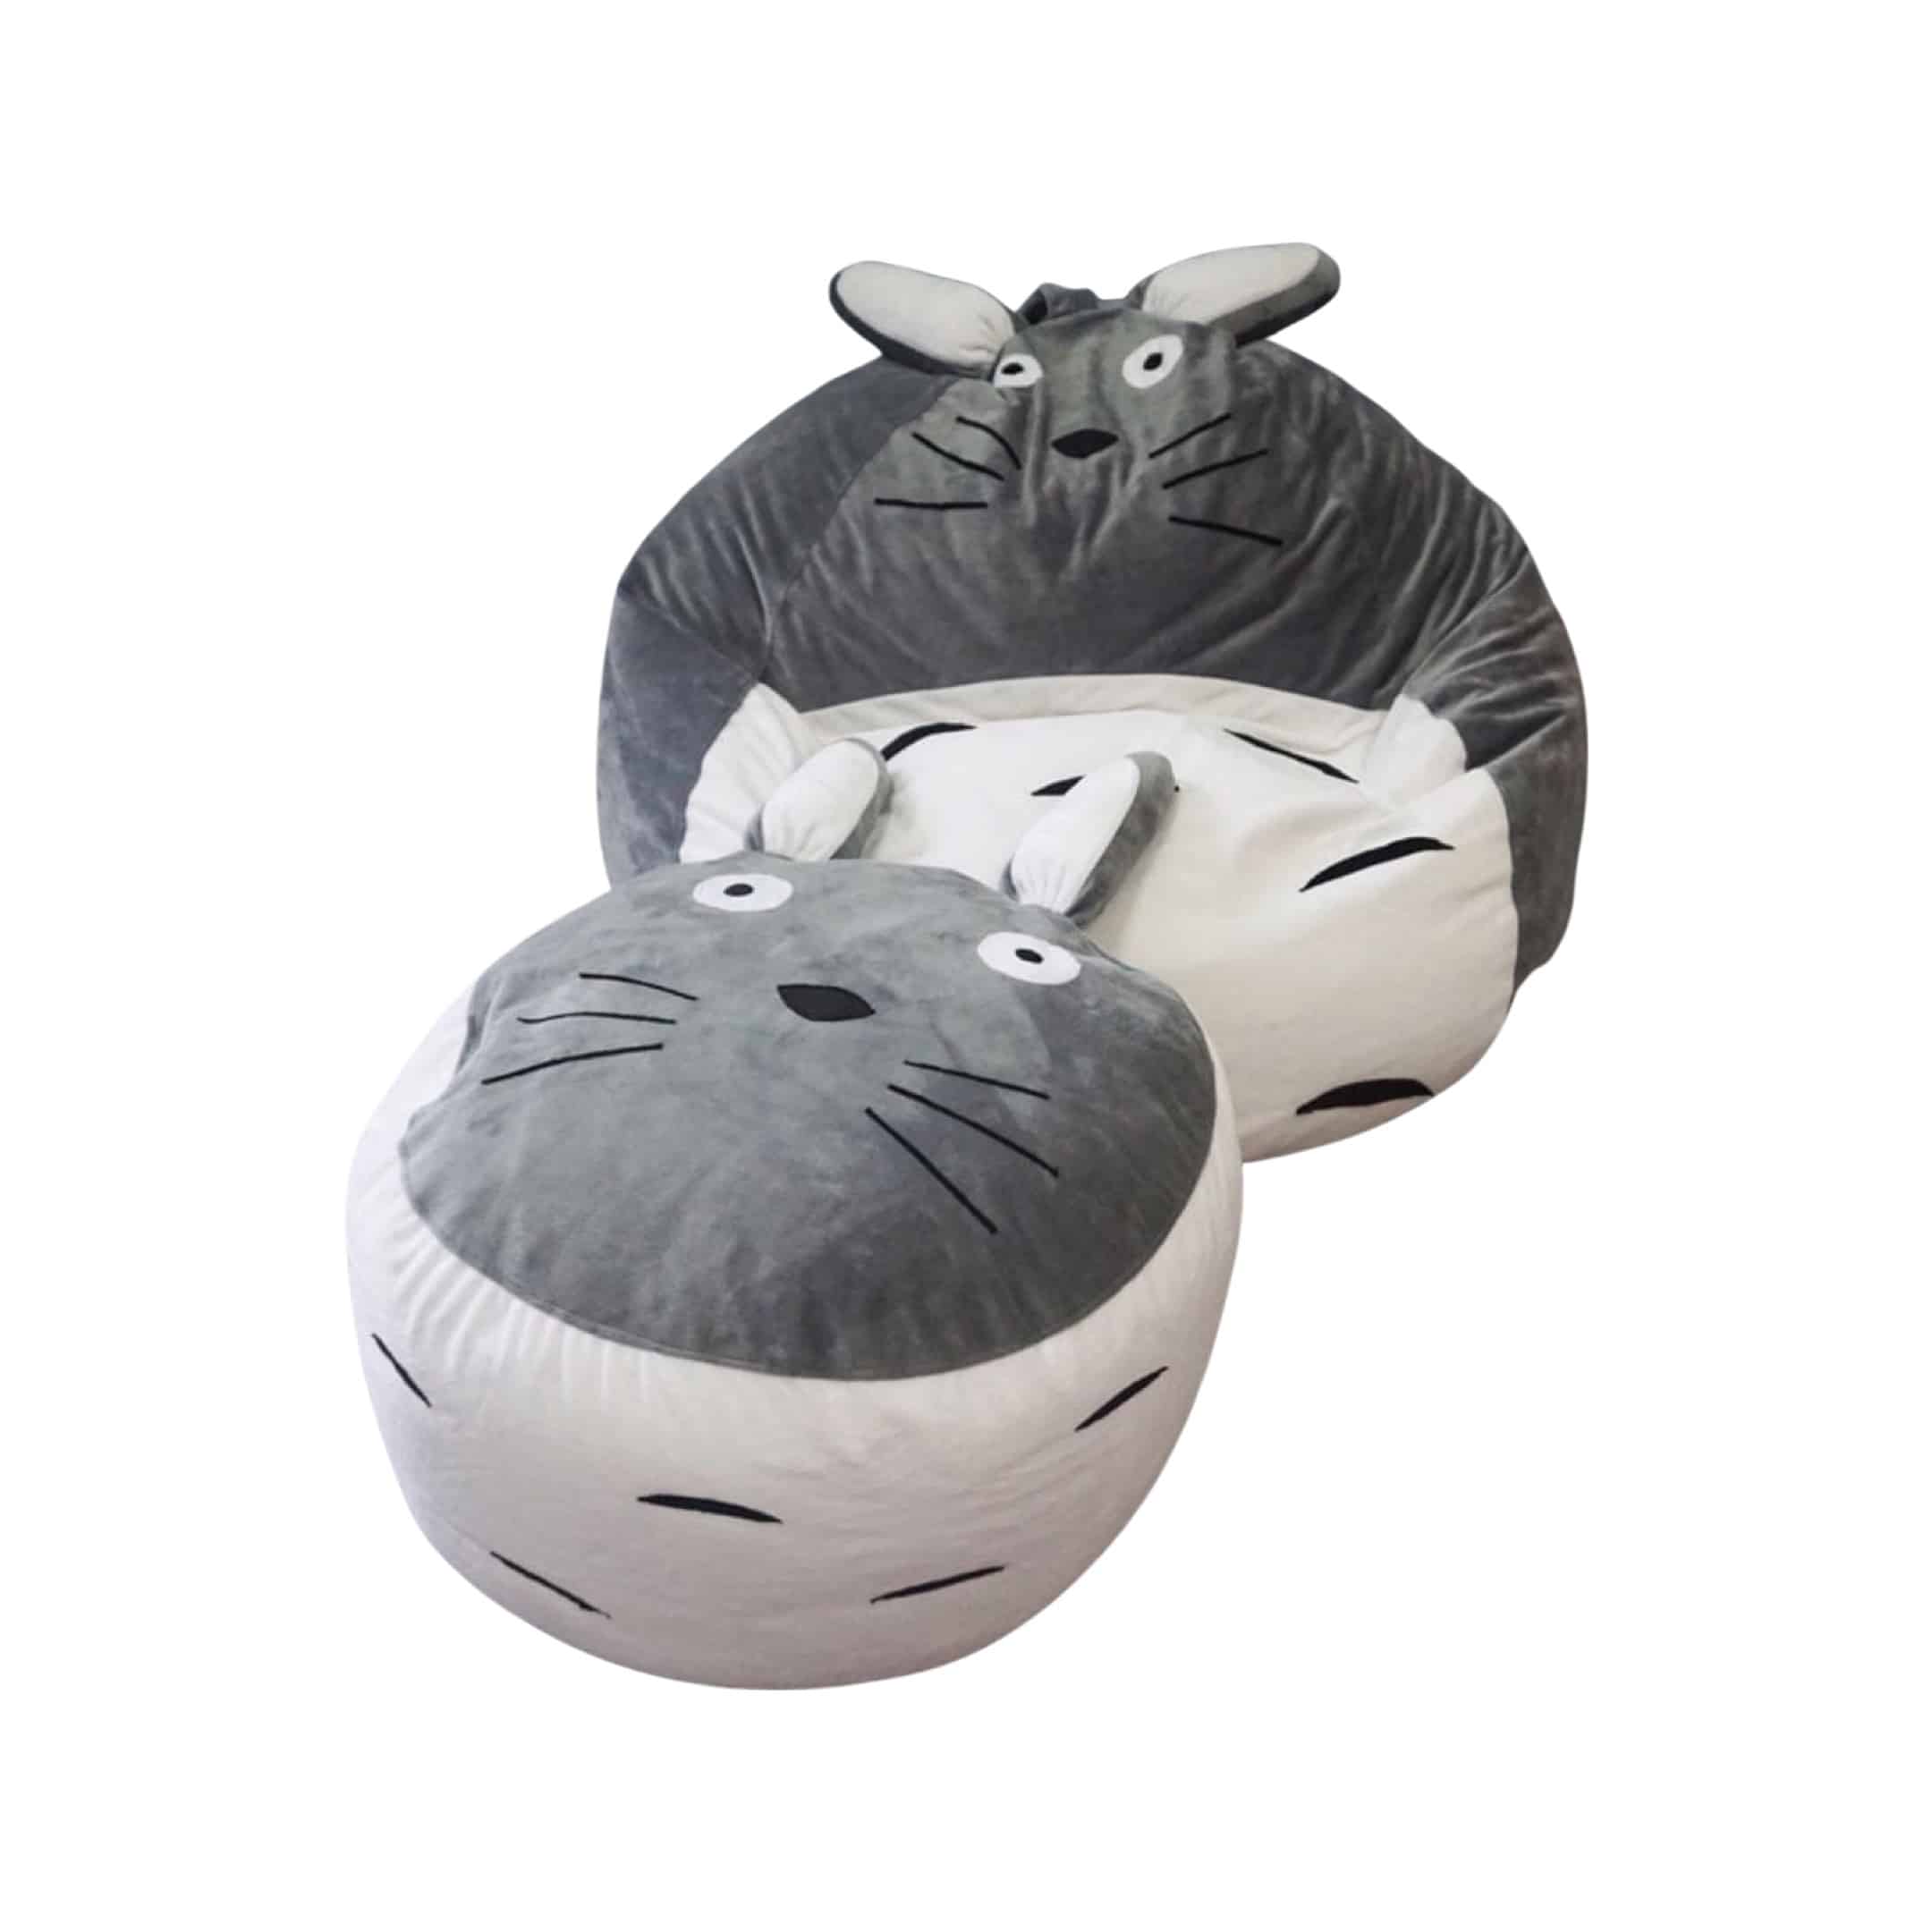 Ghế Lười Totoro Hình Thú + Đôn Gác Chân Totoro Hạt Xốp - Beanbaghome